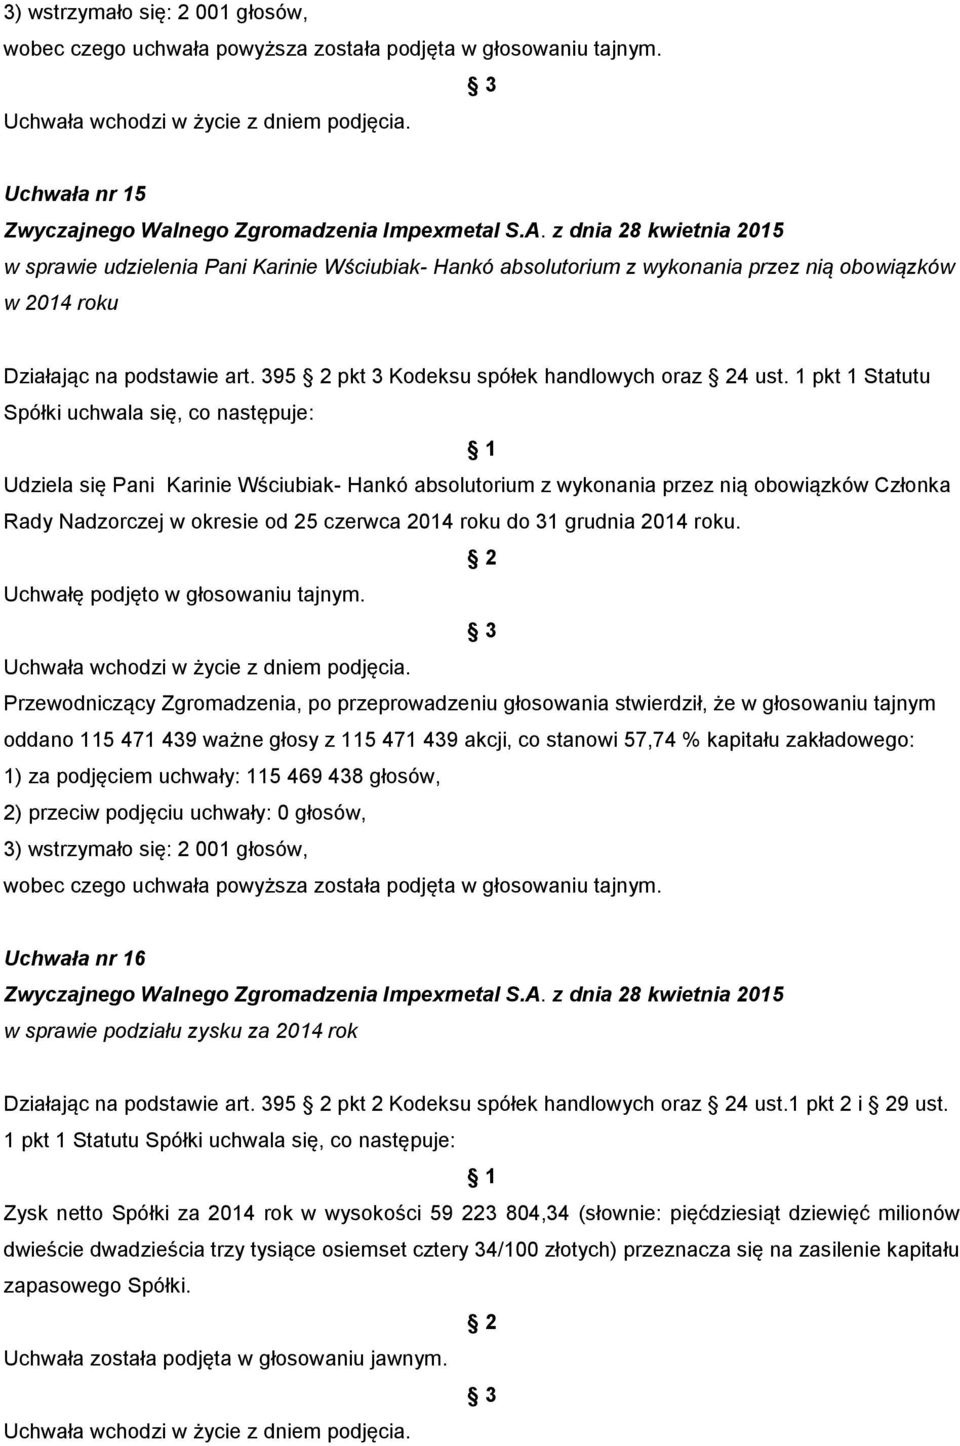 1 pkt 1 Statutu Udziela się Pani Karinie Wściubiak- Hankó absolutorium z wykonania przez nią obowiązków Członka Rady Nadzorczej w okresie od 25 czerwca 2014 roku do 31 grudnia 2014 roku.